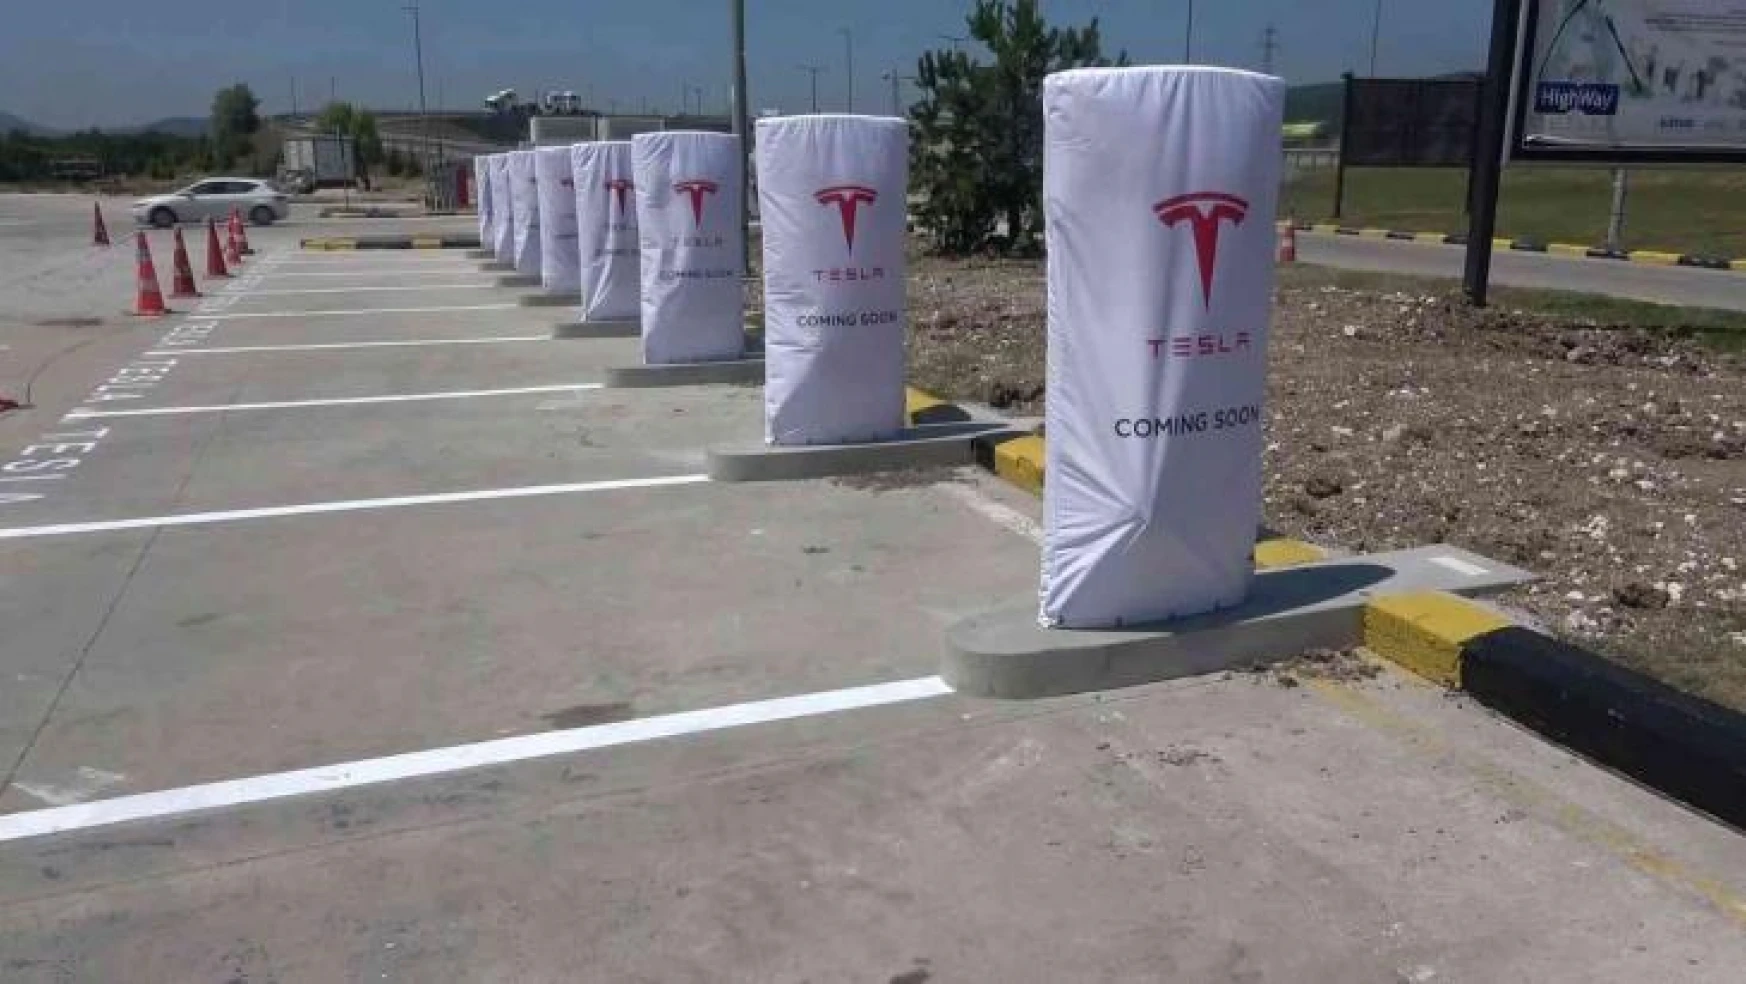 Tesla otomobil sahipleri şarj istasyonunu mangal partisiyle kutlayacak